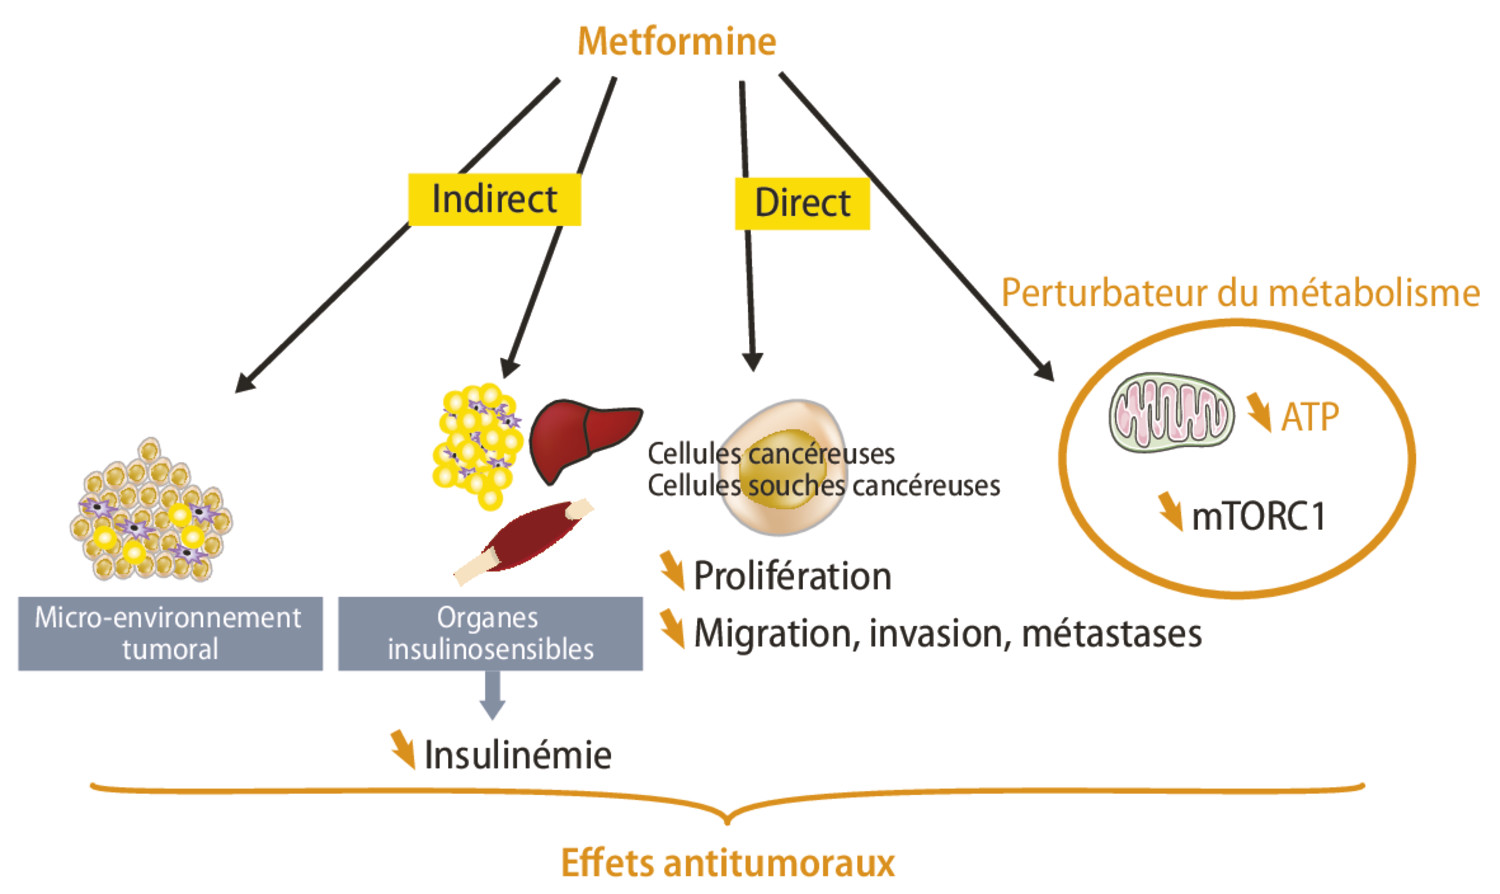 Où en sommes-nous des effets antitumoraux de la metformine ? - Figure 2